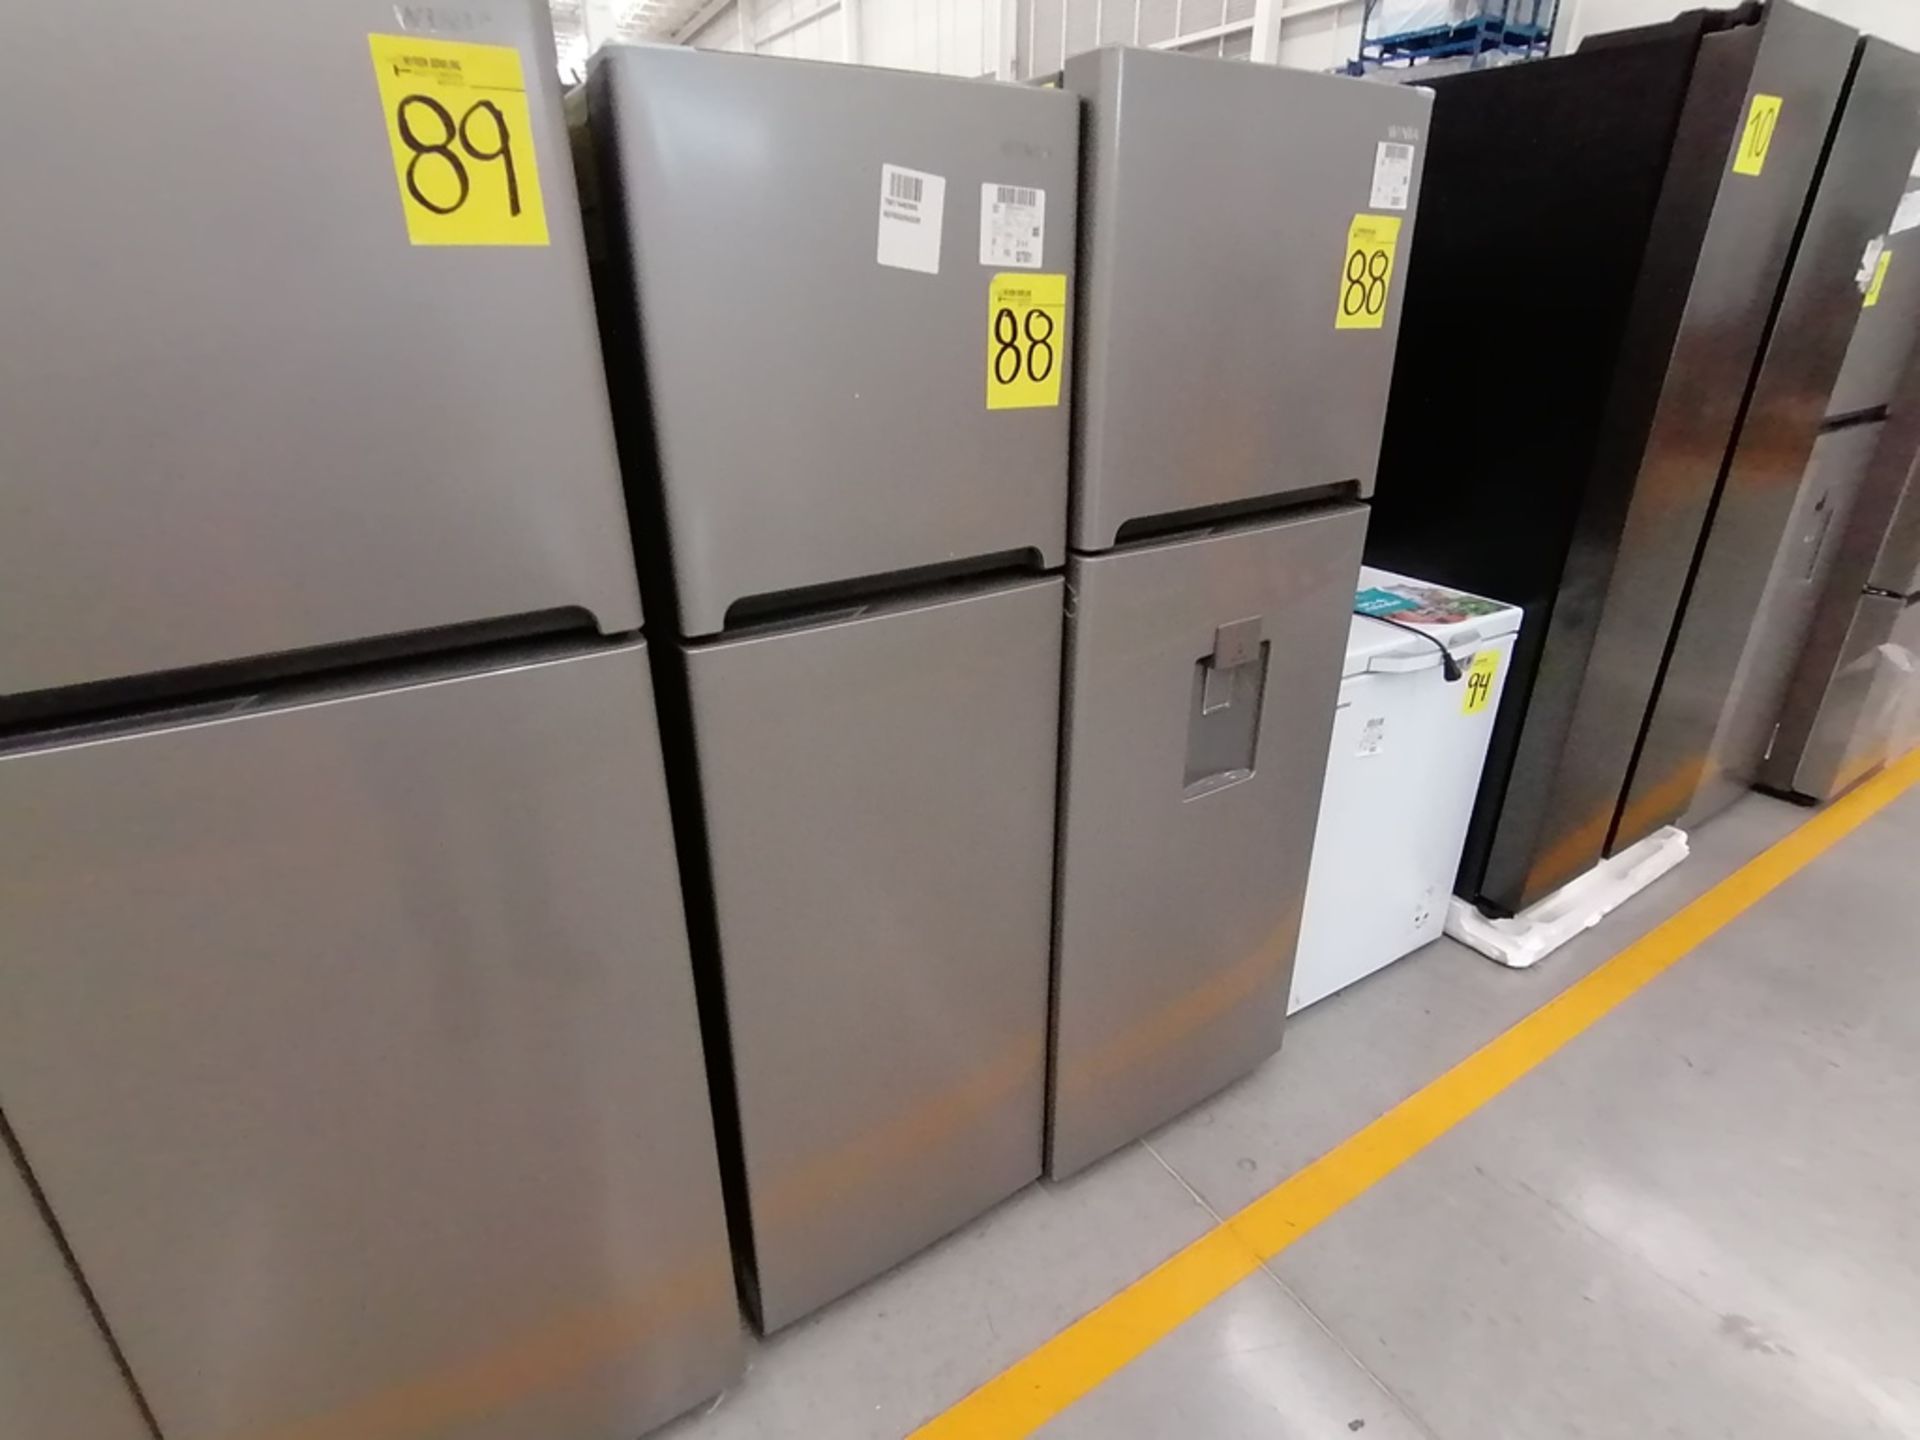 Lote de 2 refrigeradores incluye: 1 Refrigerador, Marca Winia, Modelo DFR25210GN, Serie MR219N11602 - Image 9 of 15